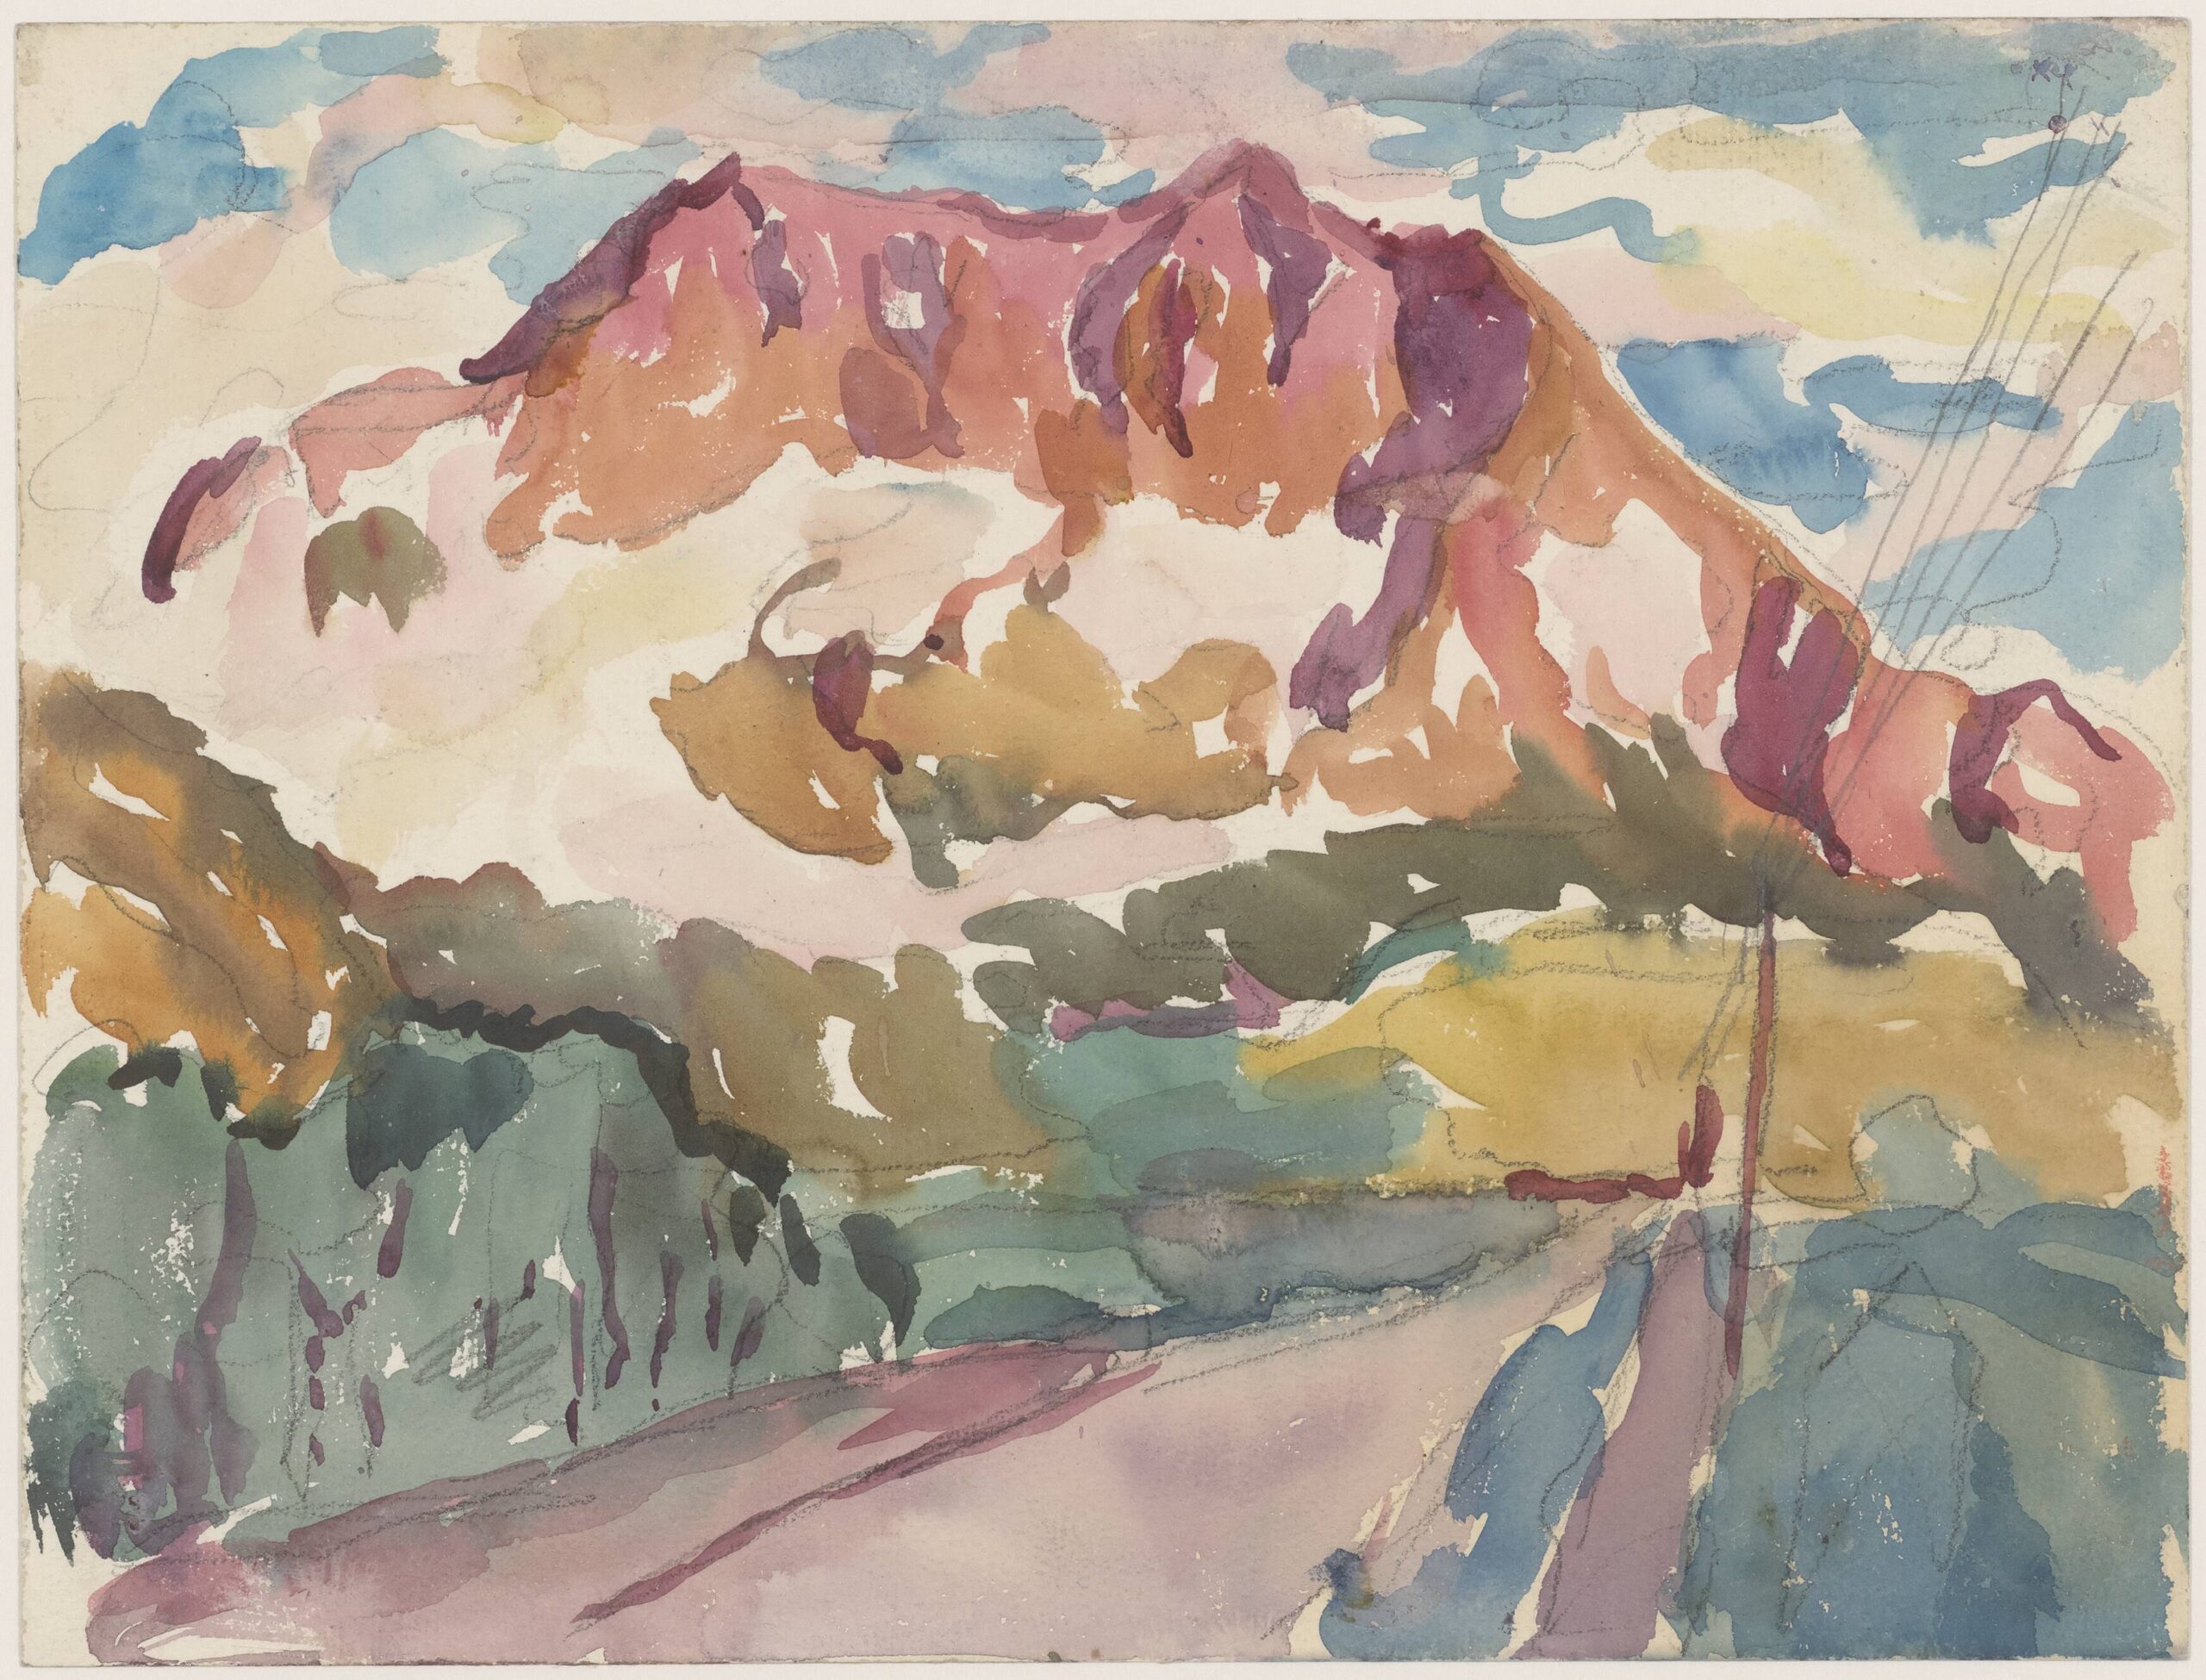 Alberto Giacometti, The Mountain Road, c. 1919, watercolor and pencil on paper, Fondation Giacometti. © Succession Alberto Giacometti / ADAGP, Paris, 2022